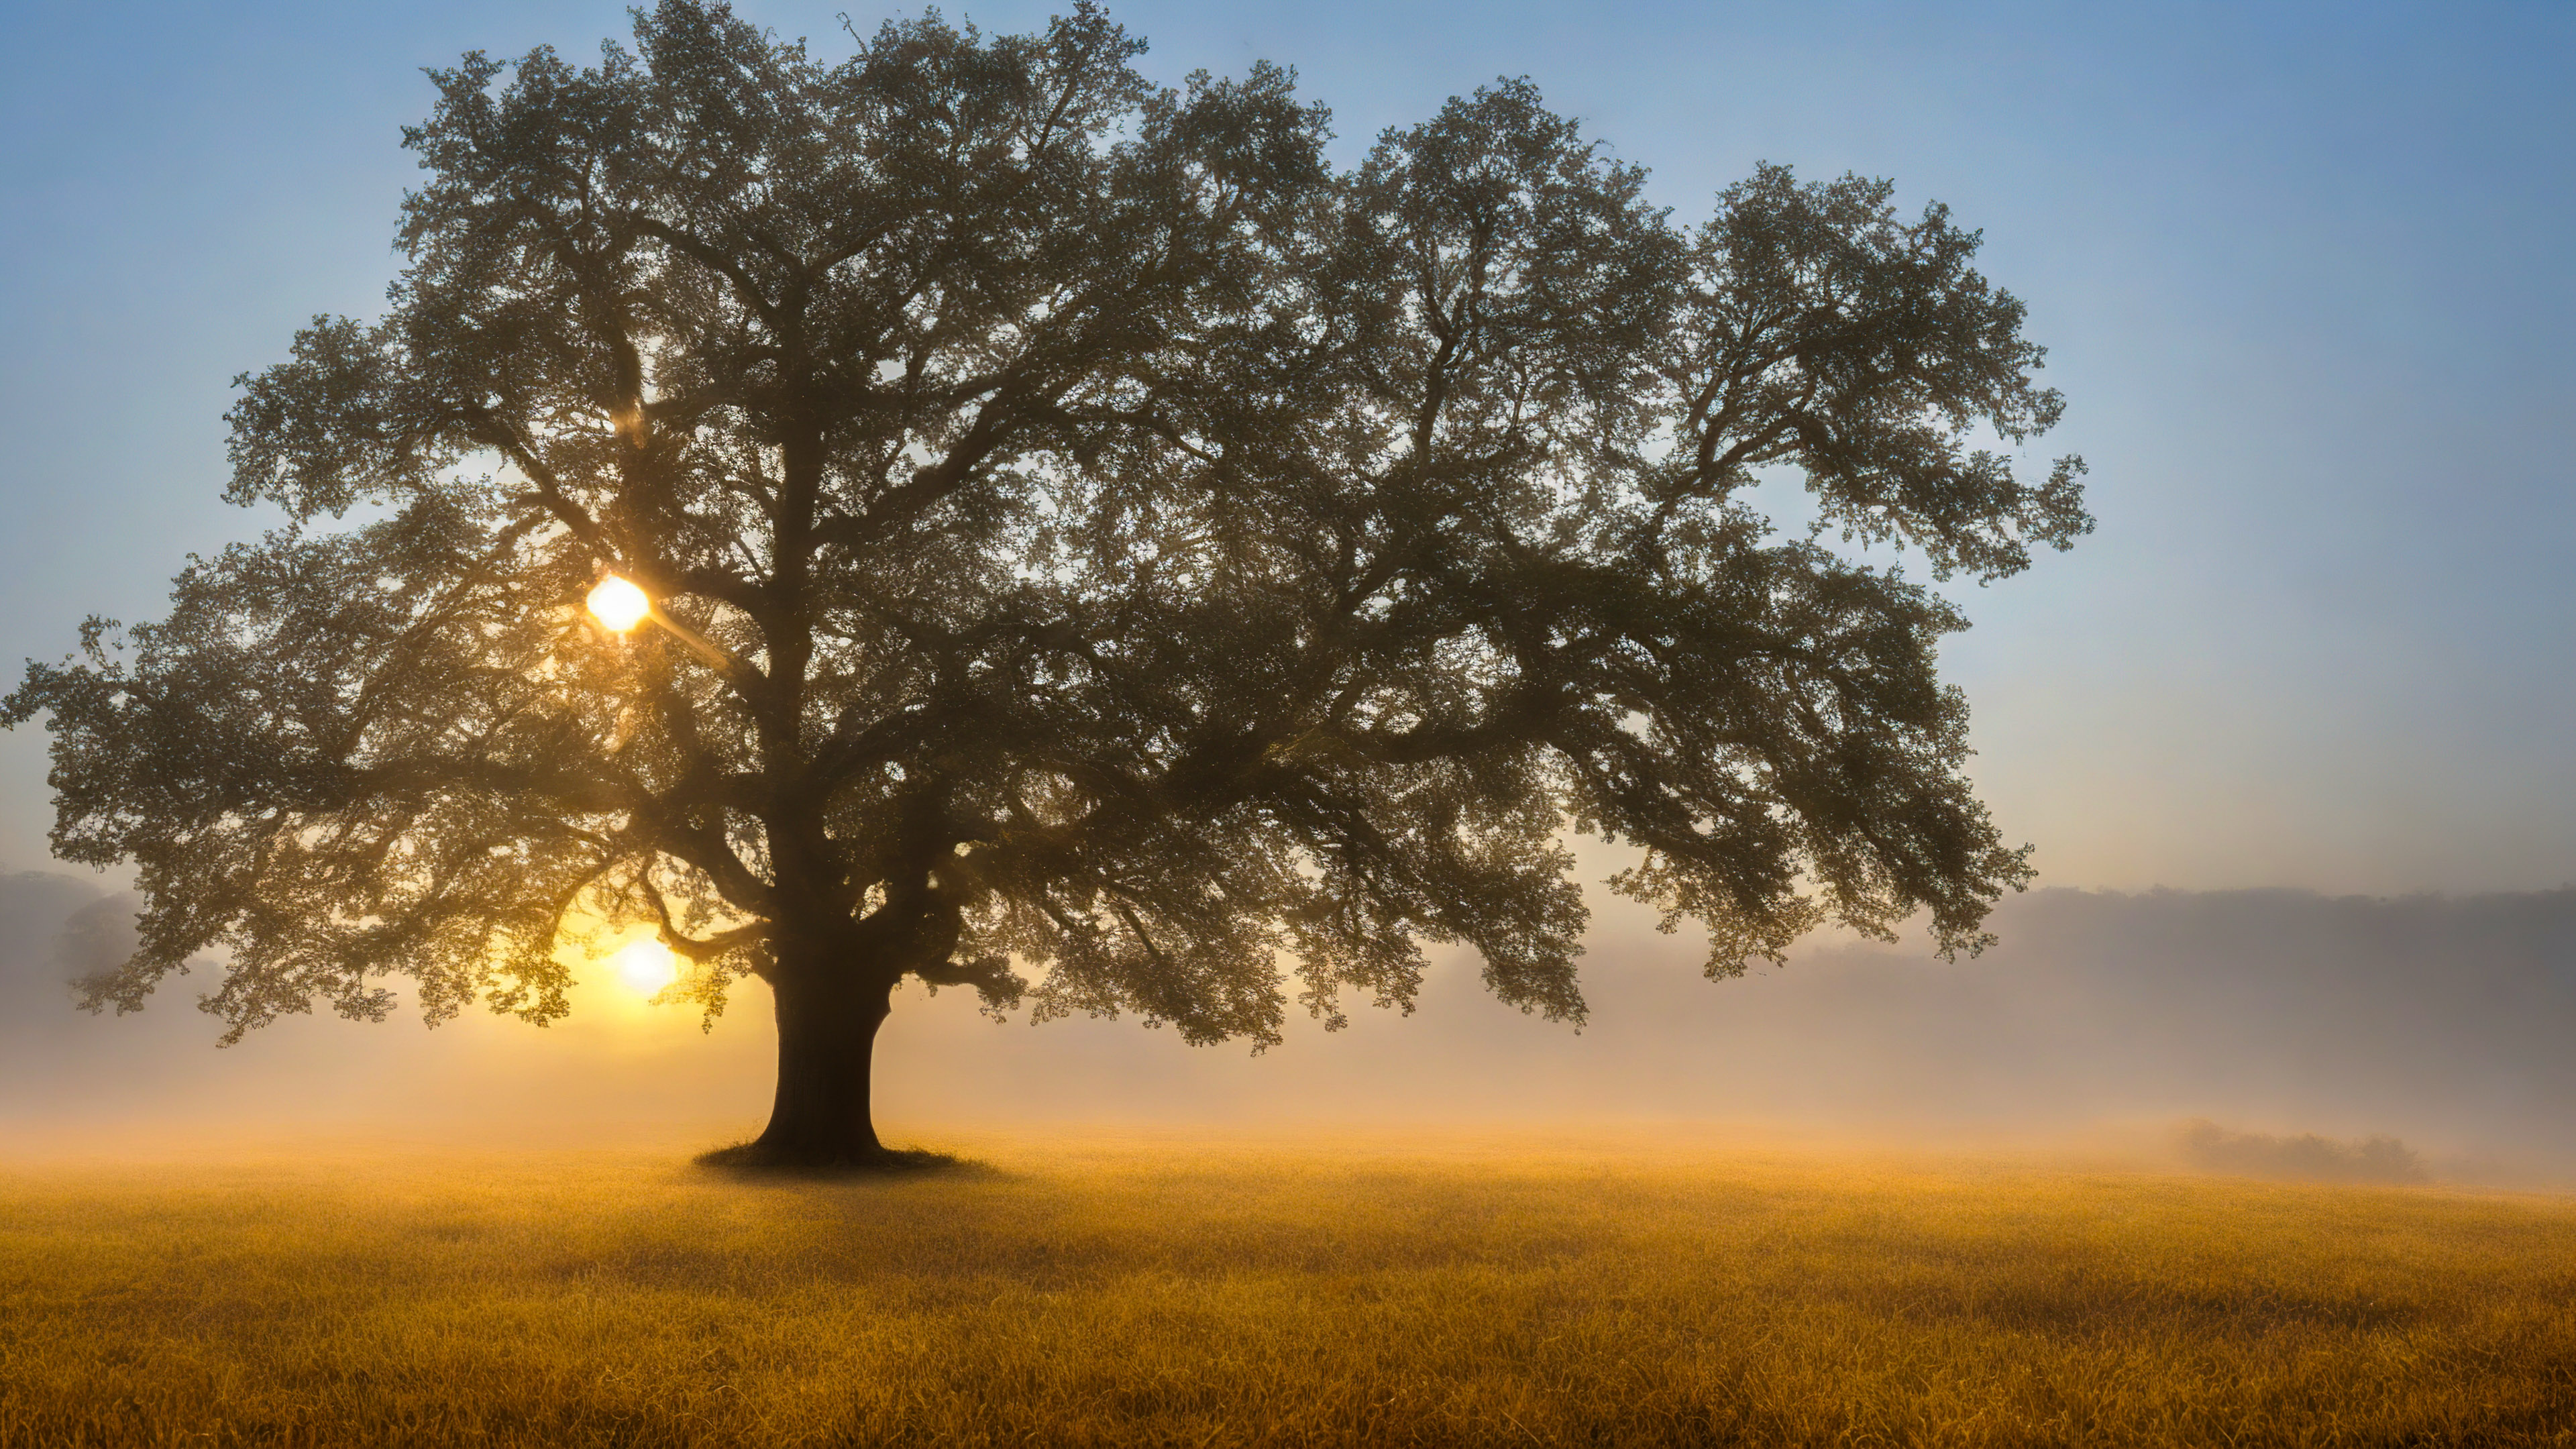 Vivez la solitude avec notre magnifique papier peint de paysage, mettant en scène un chêne majestueux se tenant seul dans un champ brumeux, avec en toile de fond le lever du soleil.